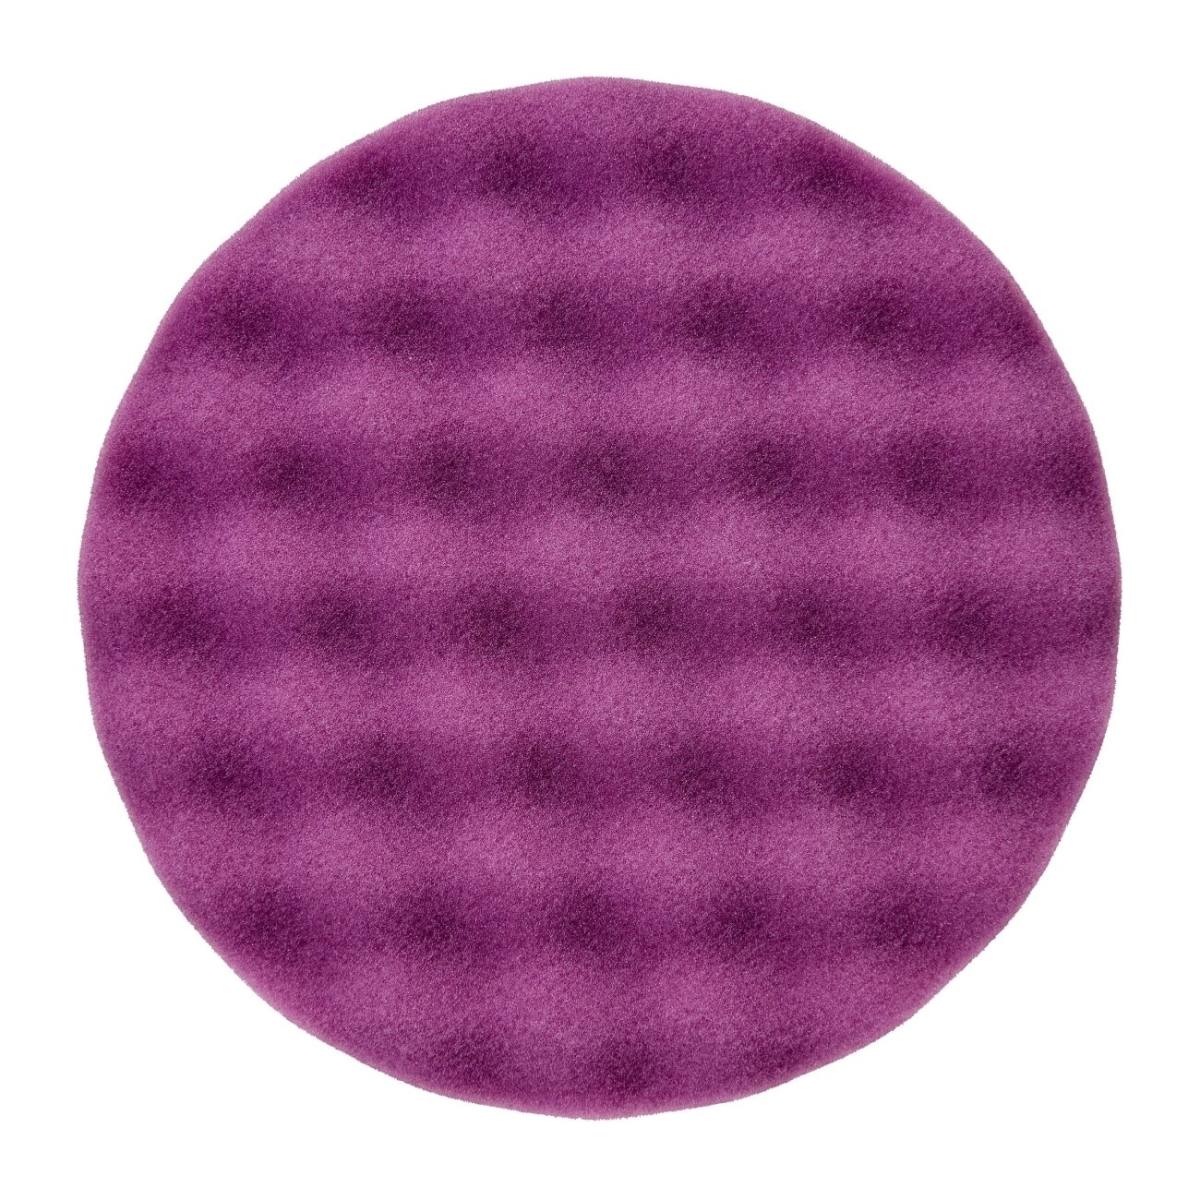 3M Perfect-it III espuma de pulir, púrpura, 150 mm #33042